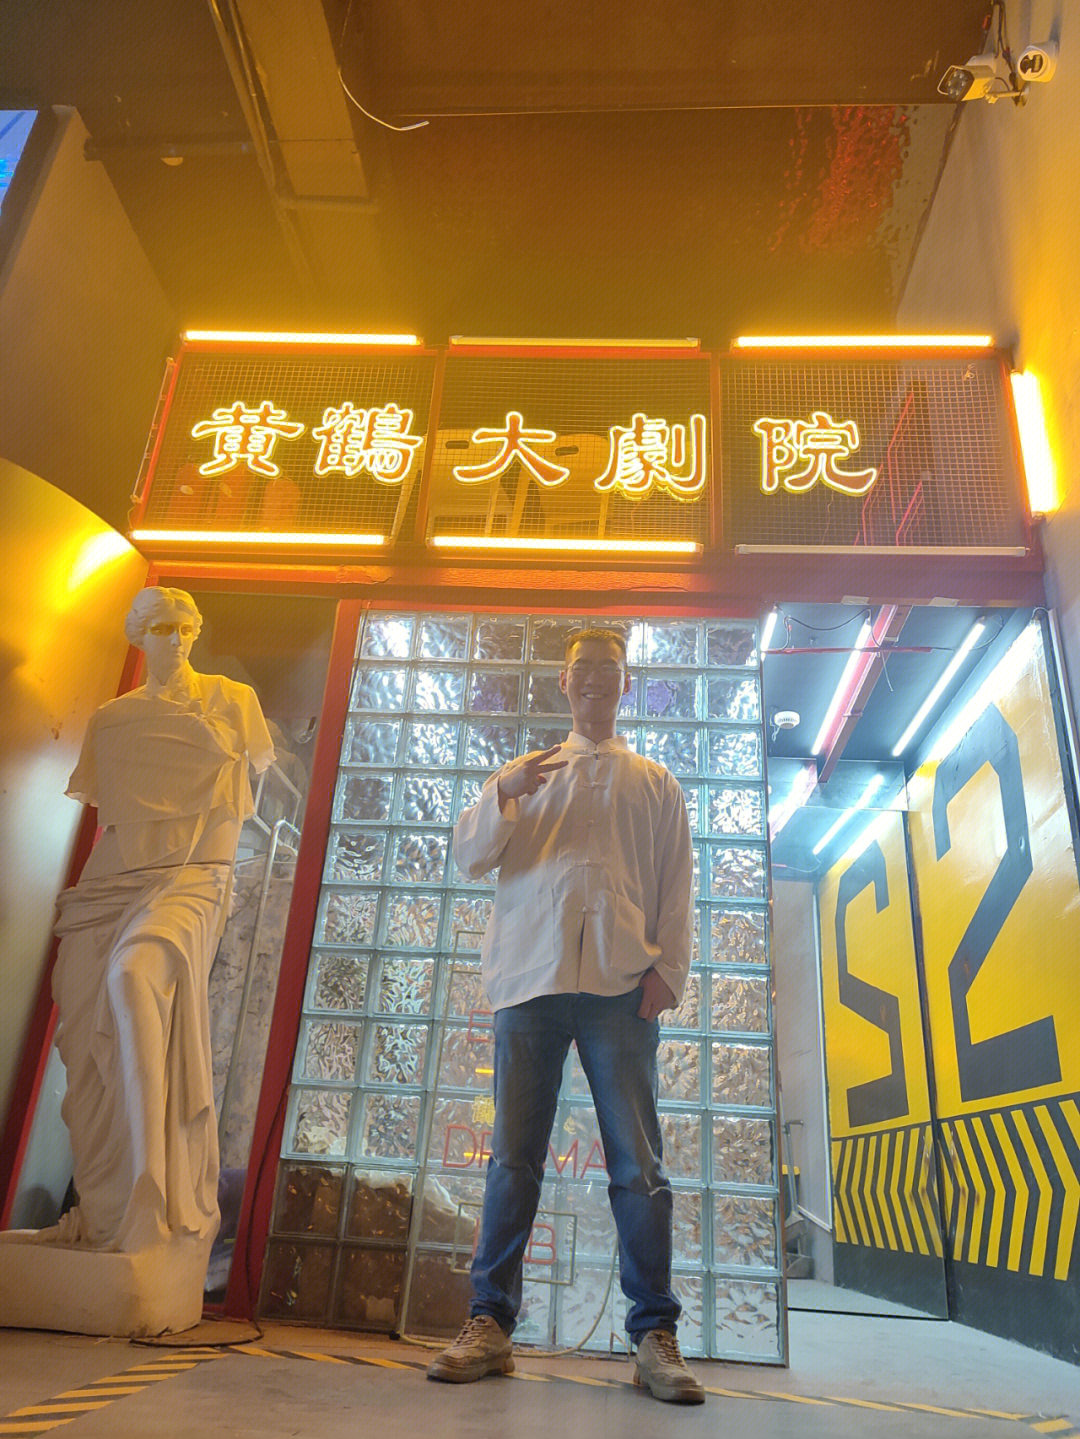 上海密室· 体验人鬼情未了的最后一场电影 《黄鹤大剧院》 94故事